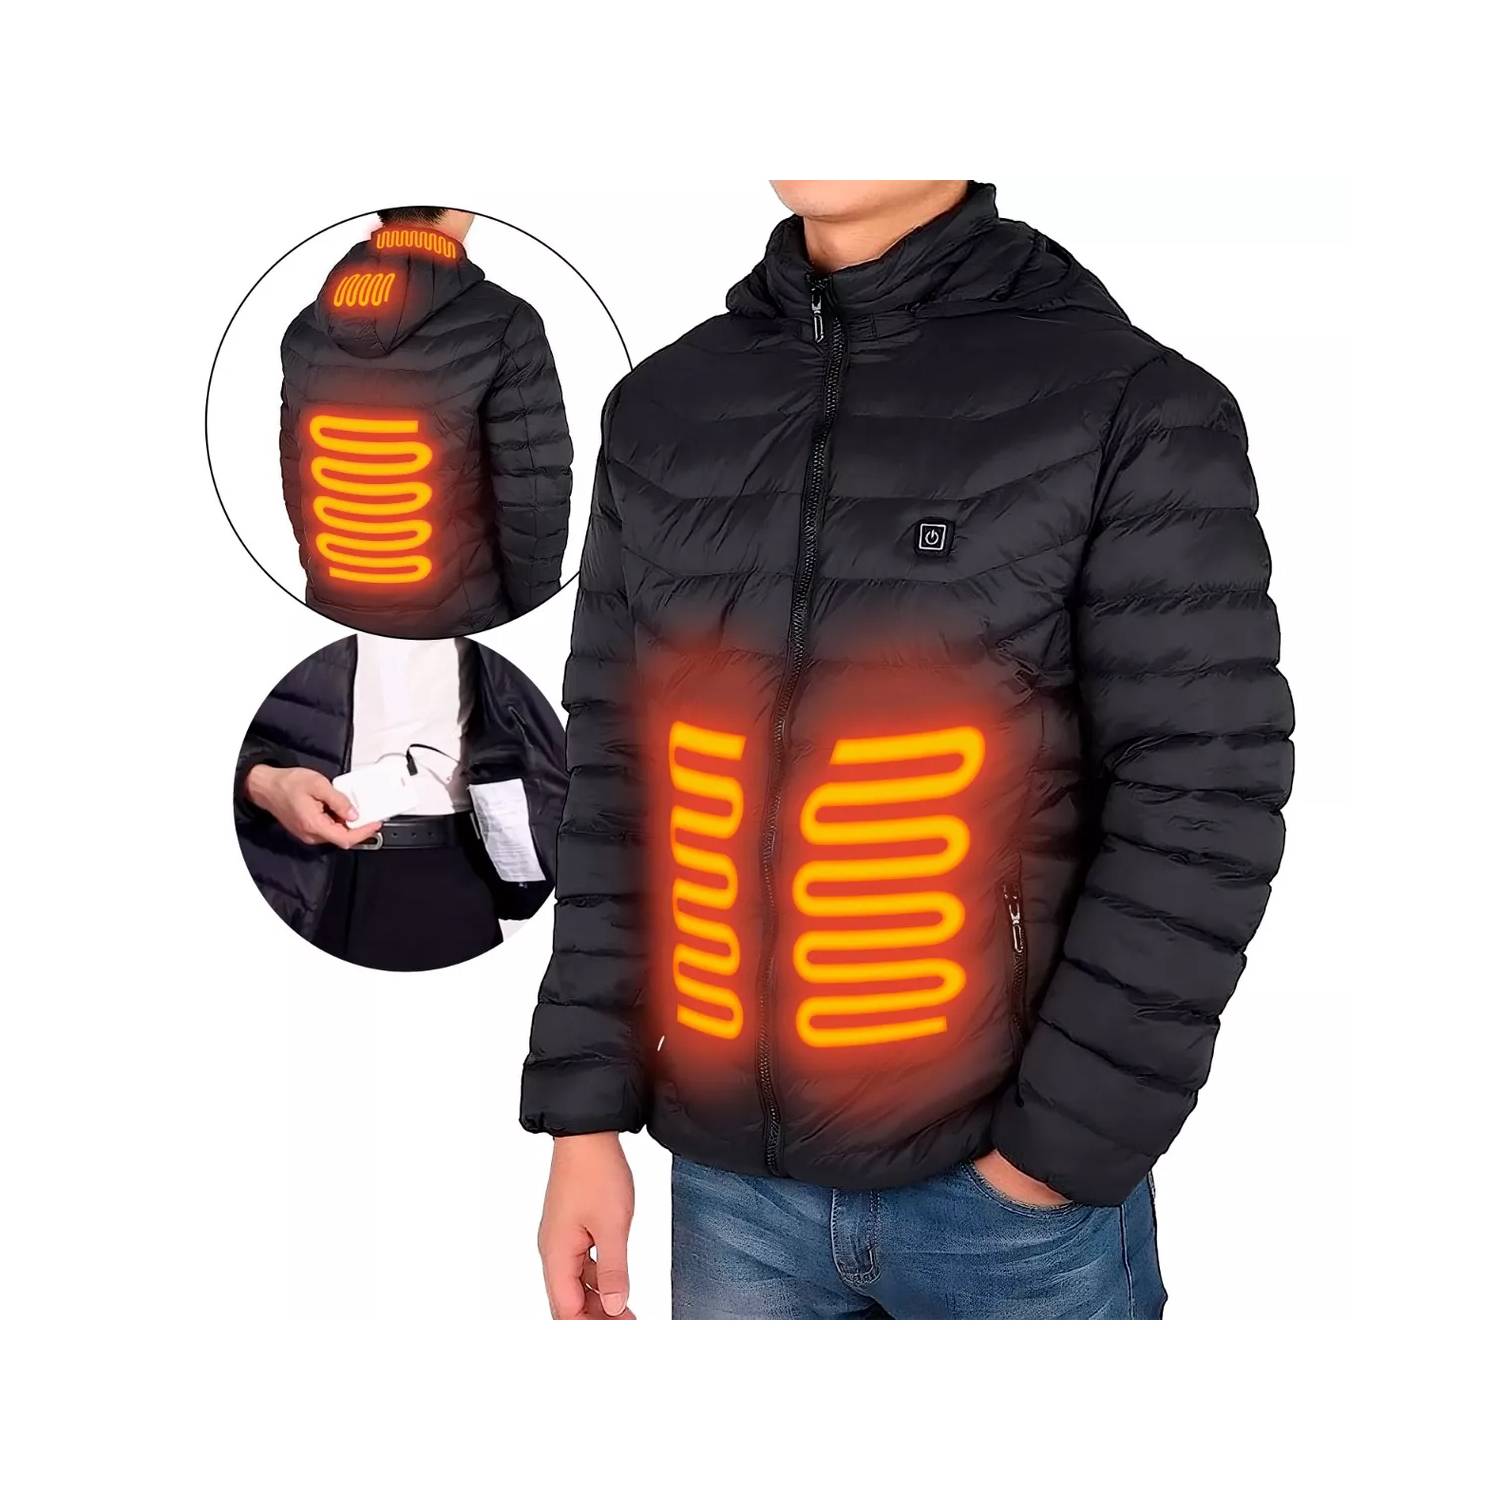 Chaqueta térmica para parejas, talla grande, calentamiento eléctrico, 4  niveles de calefacción, 21 zonas de calefacción, chaquetas con cremallera y